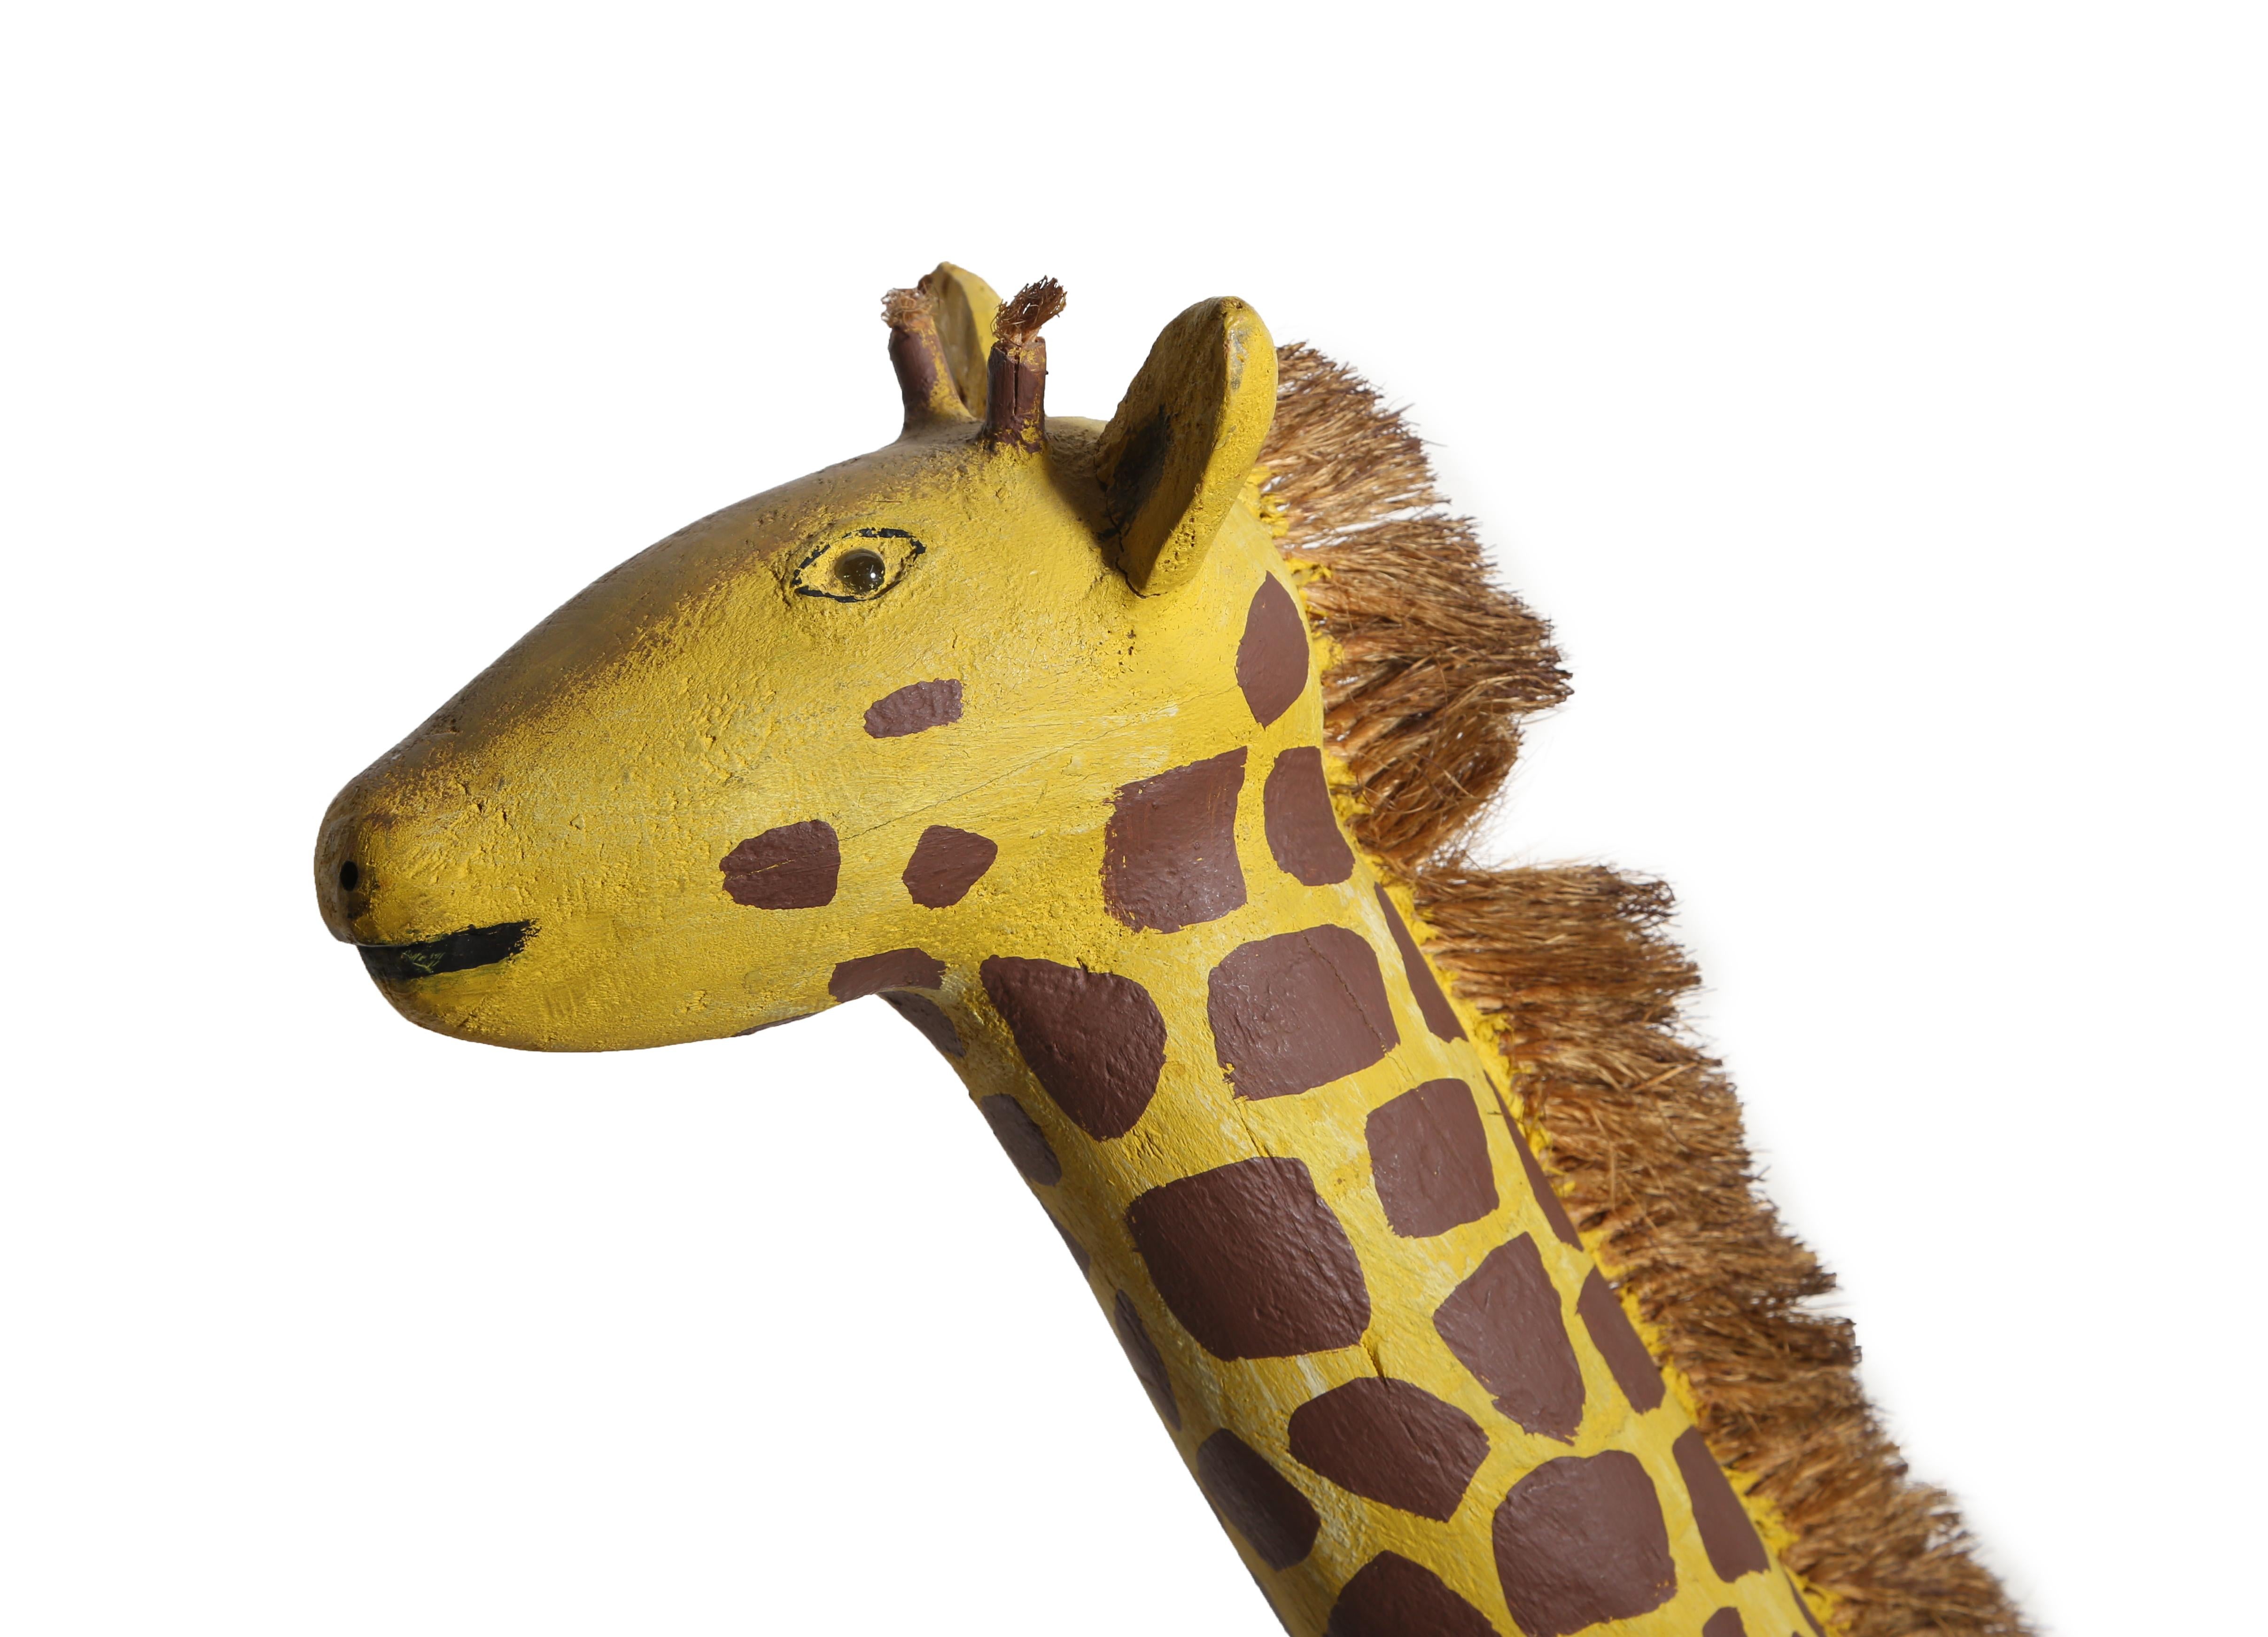 painted wooden giraffe